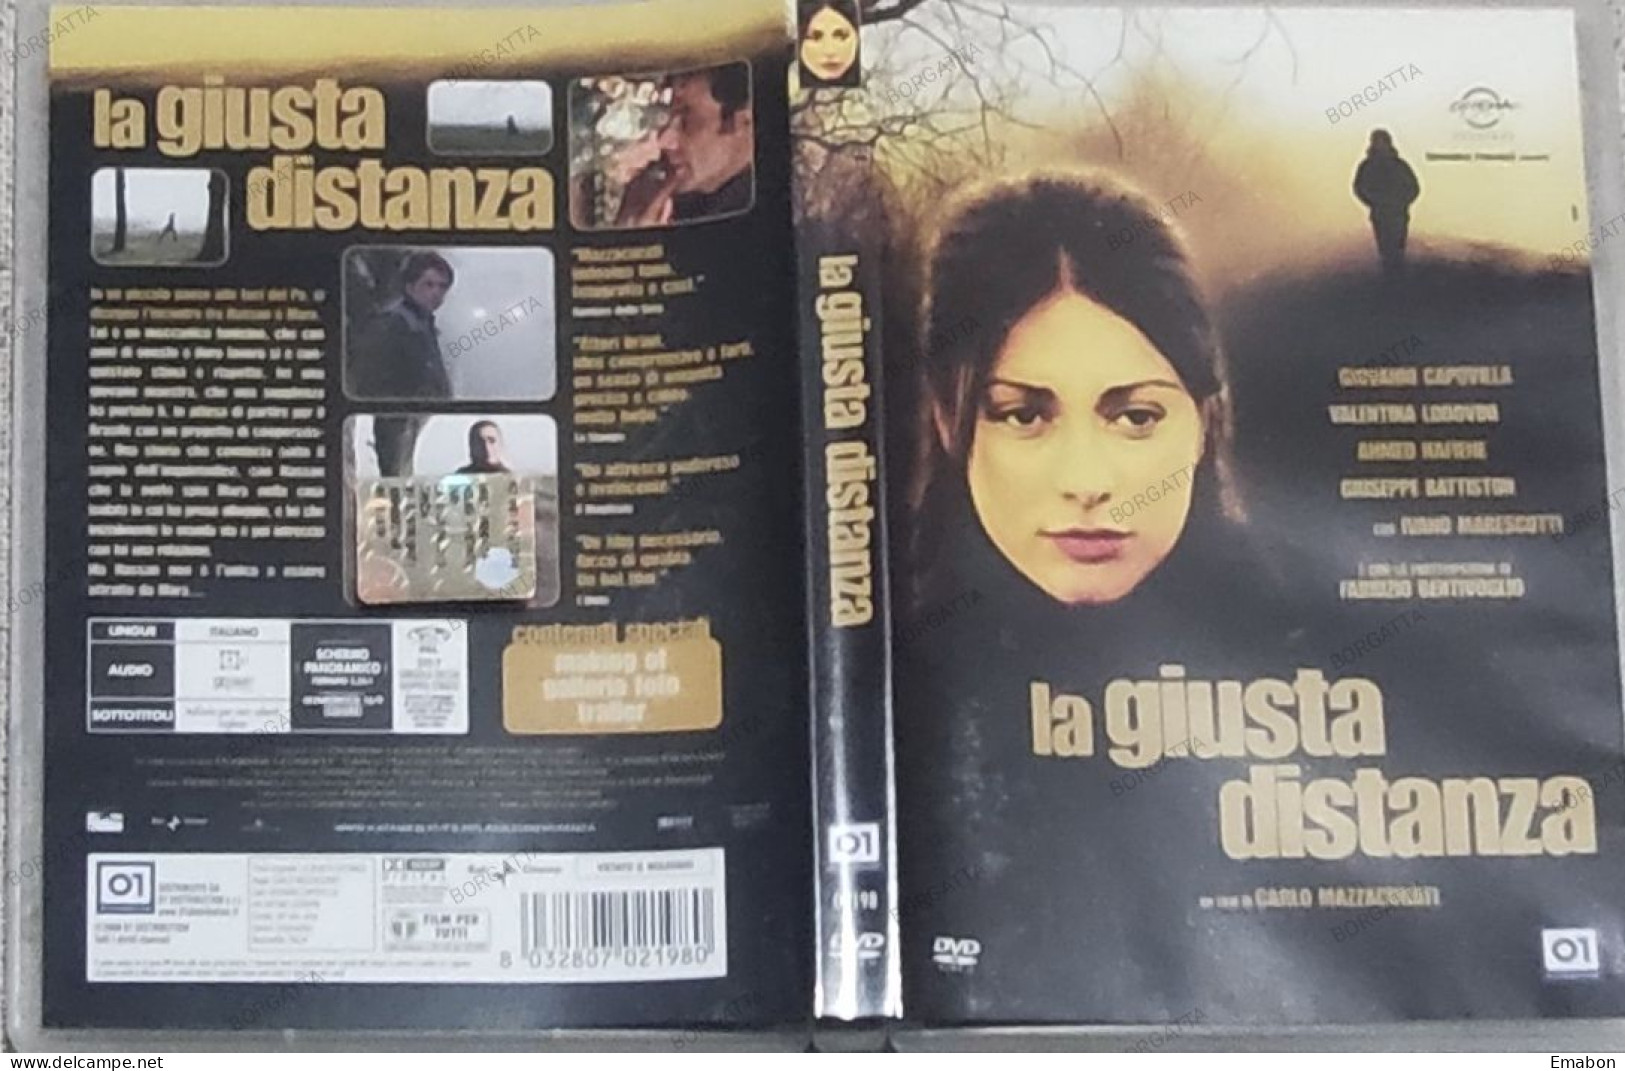 BORGATTA - DRAMMA - Dvd  " LA GIUSTA DISTANZA " CARLO MAZZACURATI - PAL 2 - 01DISTRIBUTION 2008 -  USATO In Buono Stato - Drama